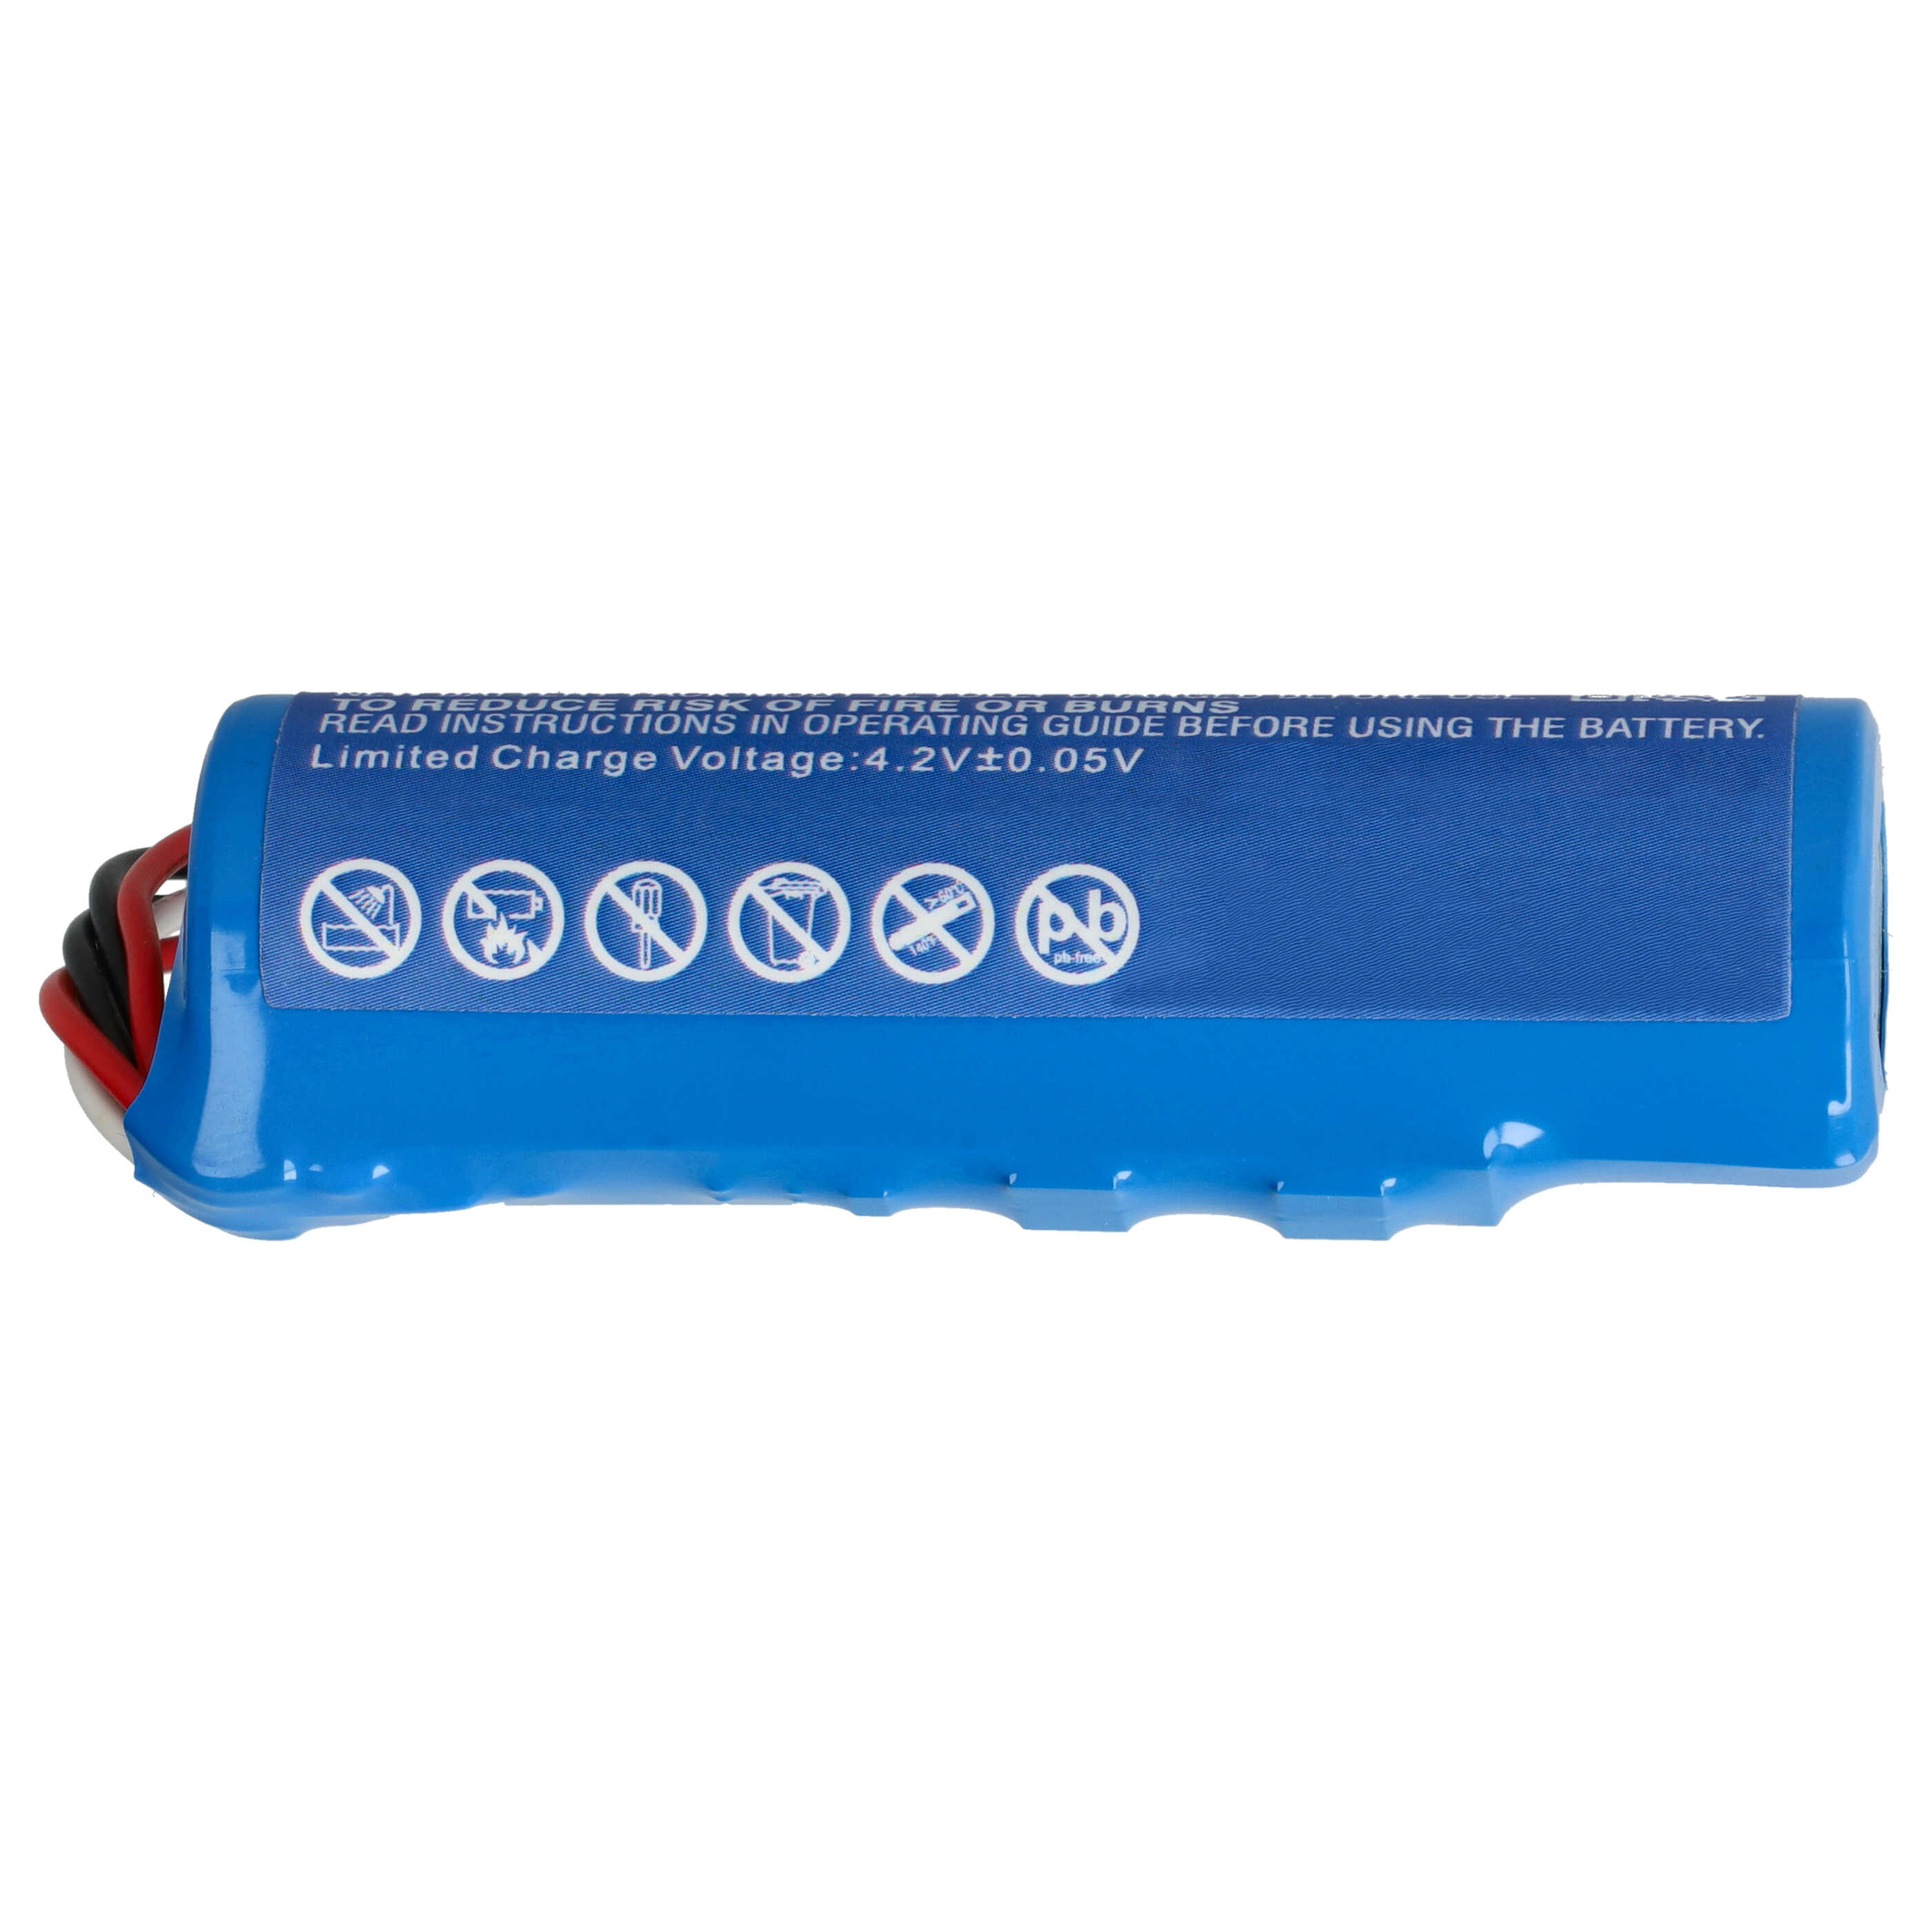 Batterie remplace SumUp PS-GB-18650-026H pour lecteur de carte - 3350mAh 3,7V Li-ion